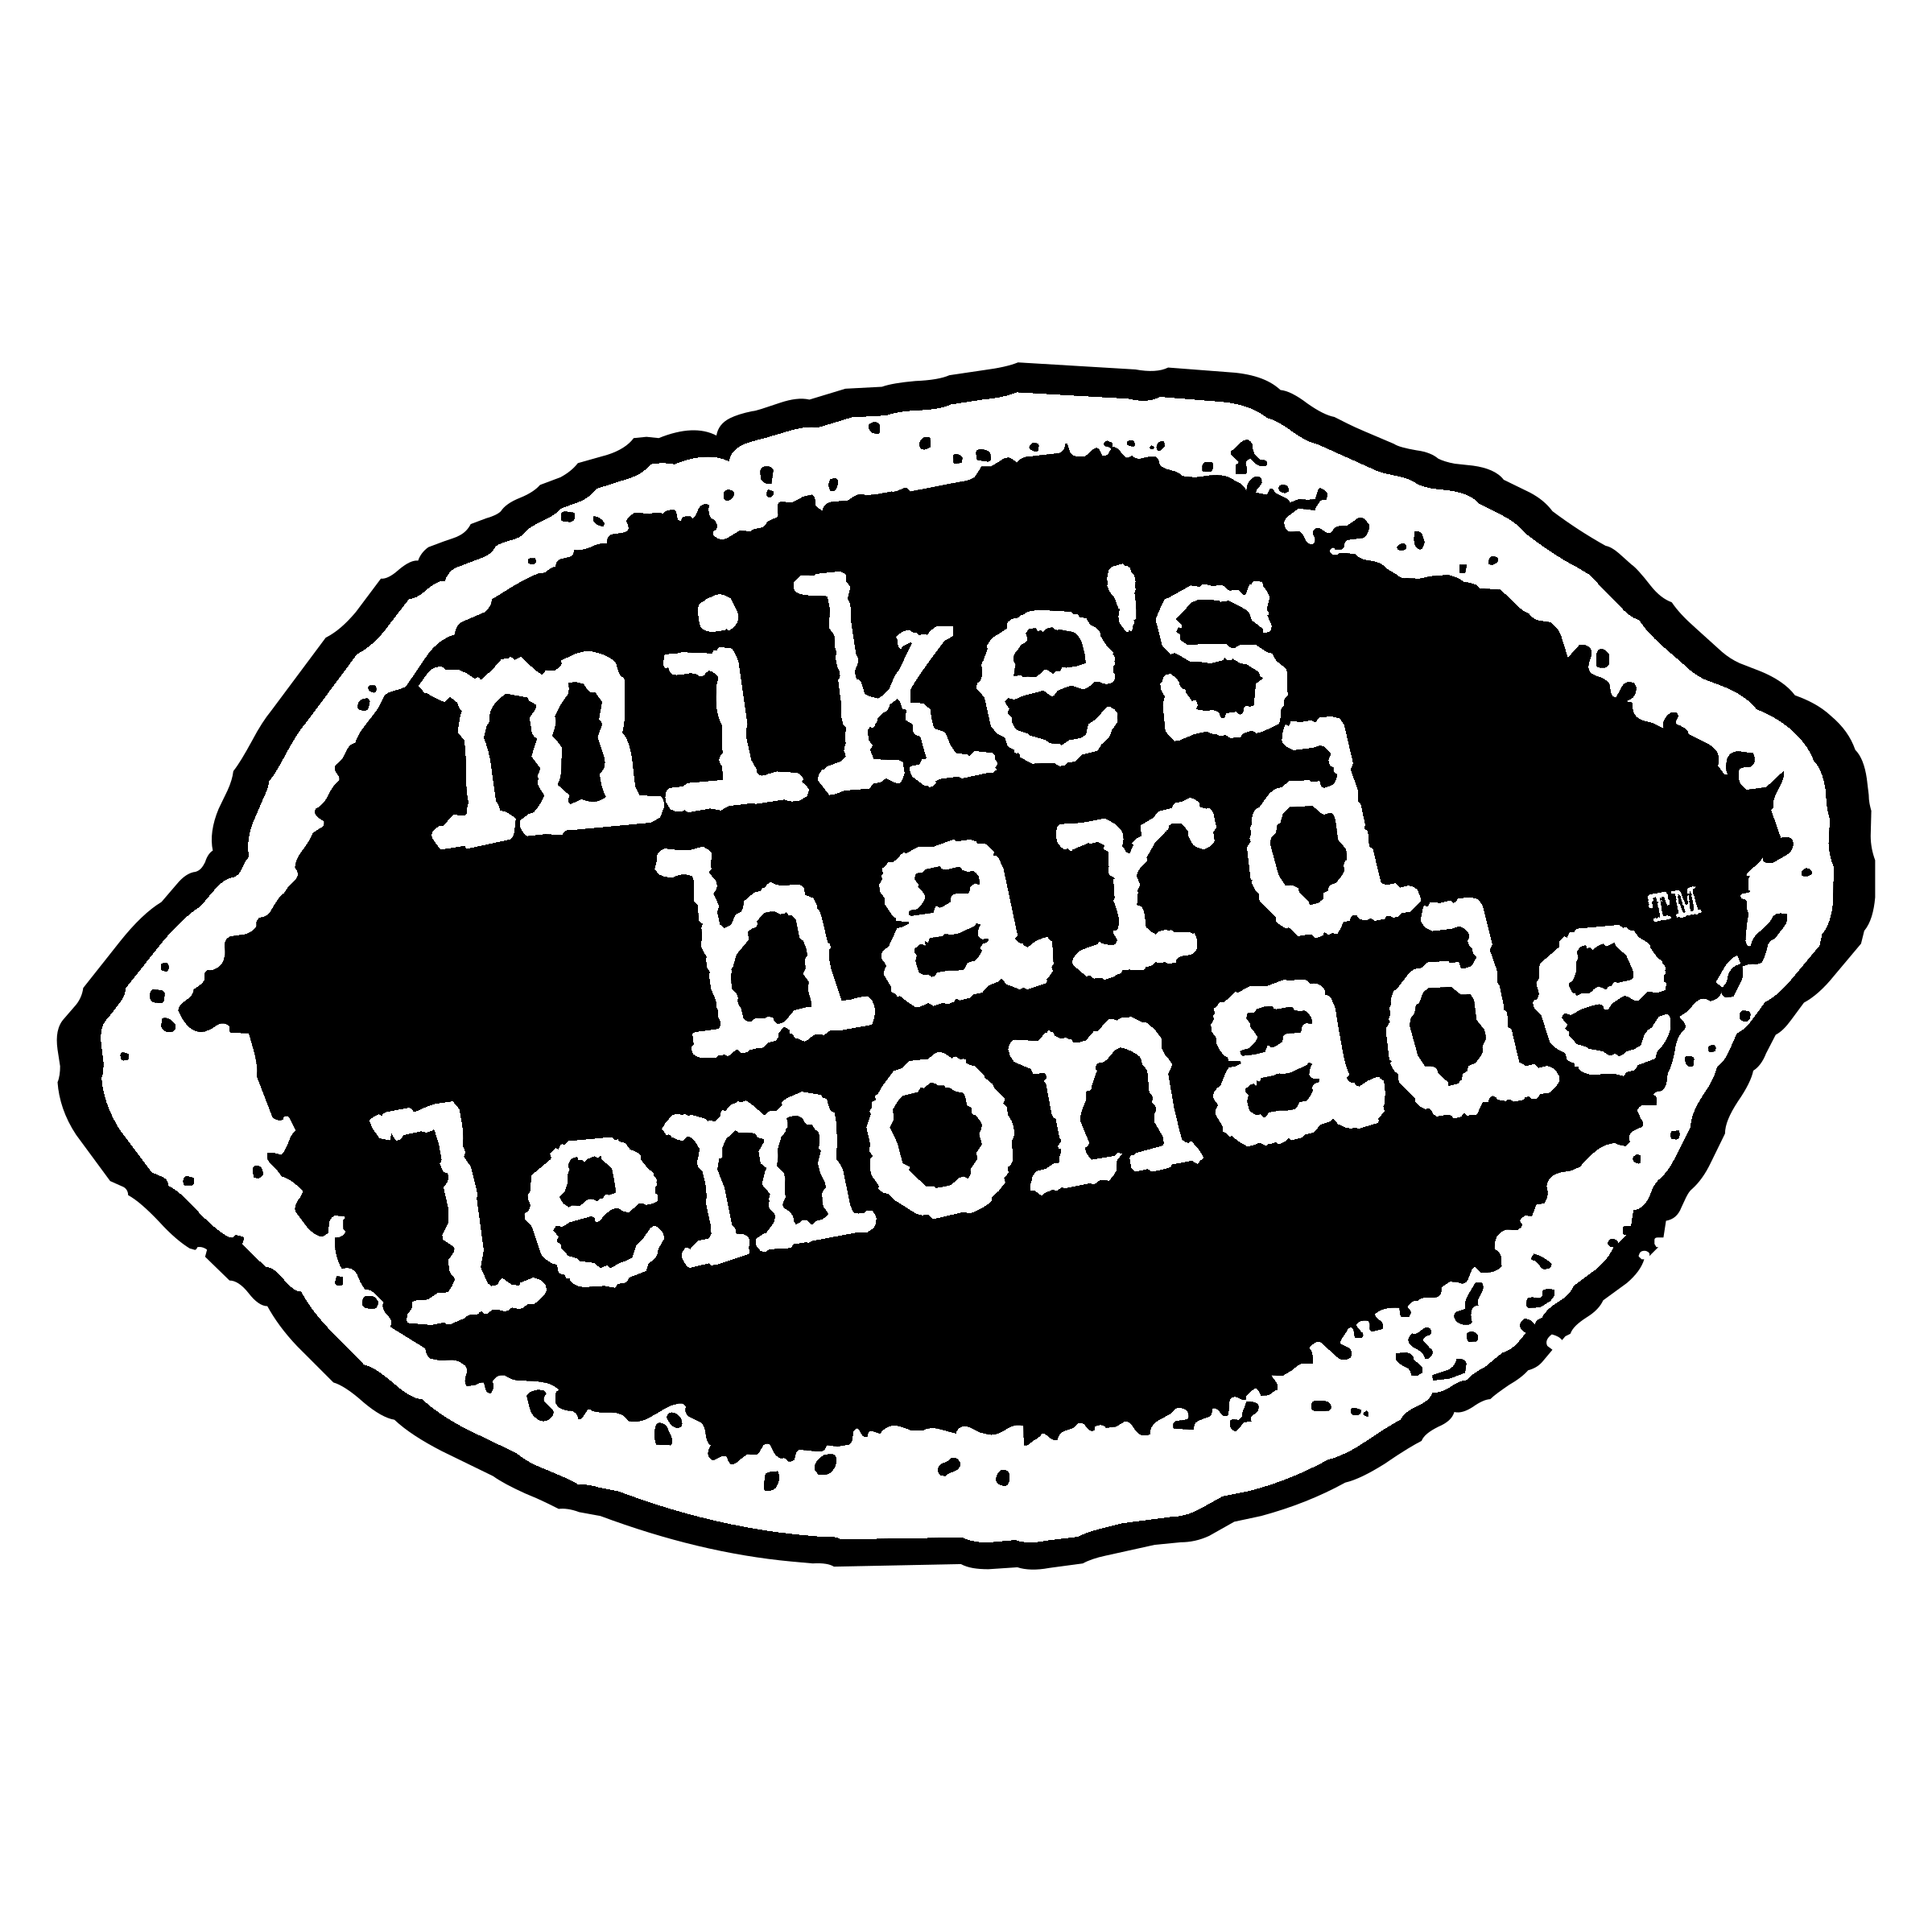 Mike's Logo - Mike's Hard Lemonade Logo PNG Transparent & SVG Vector